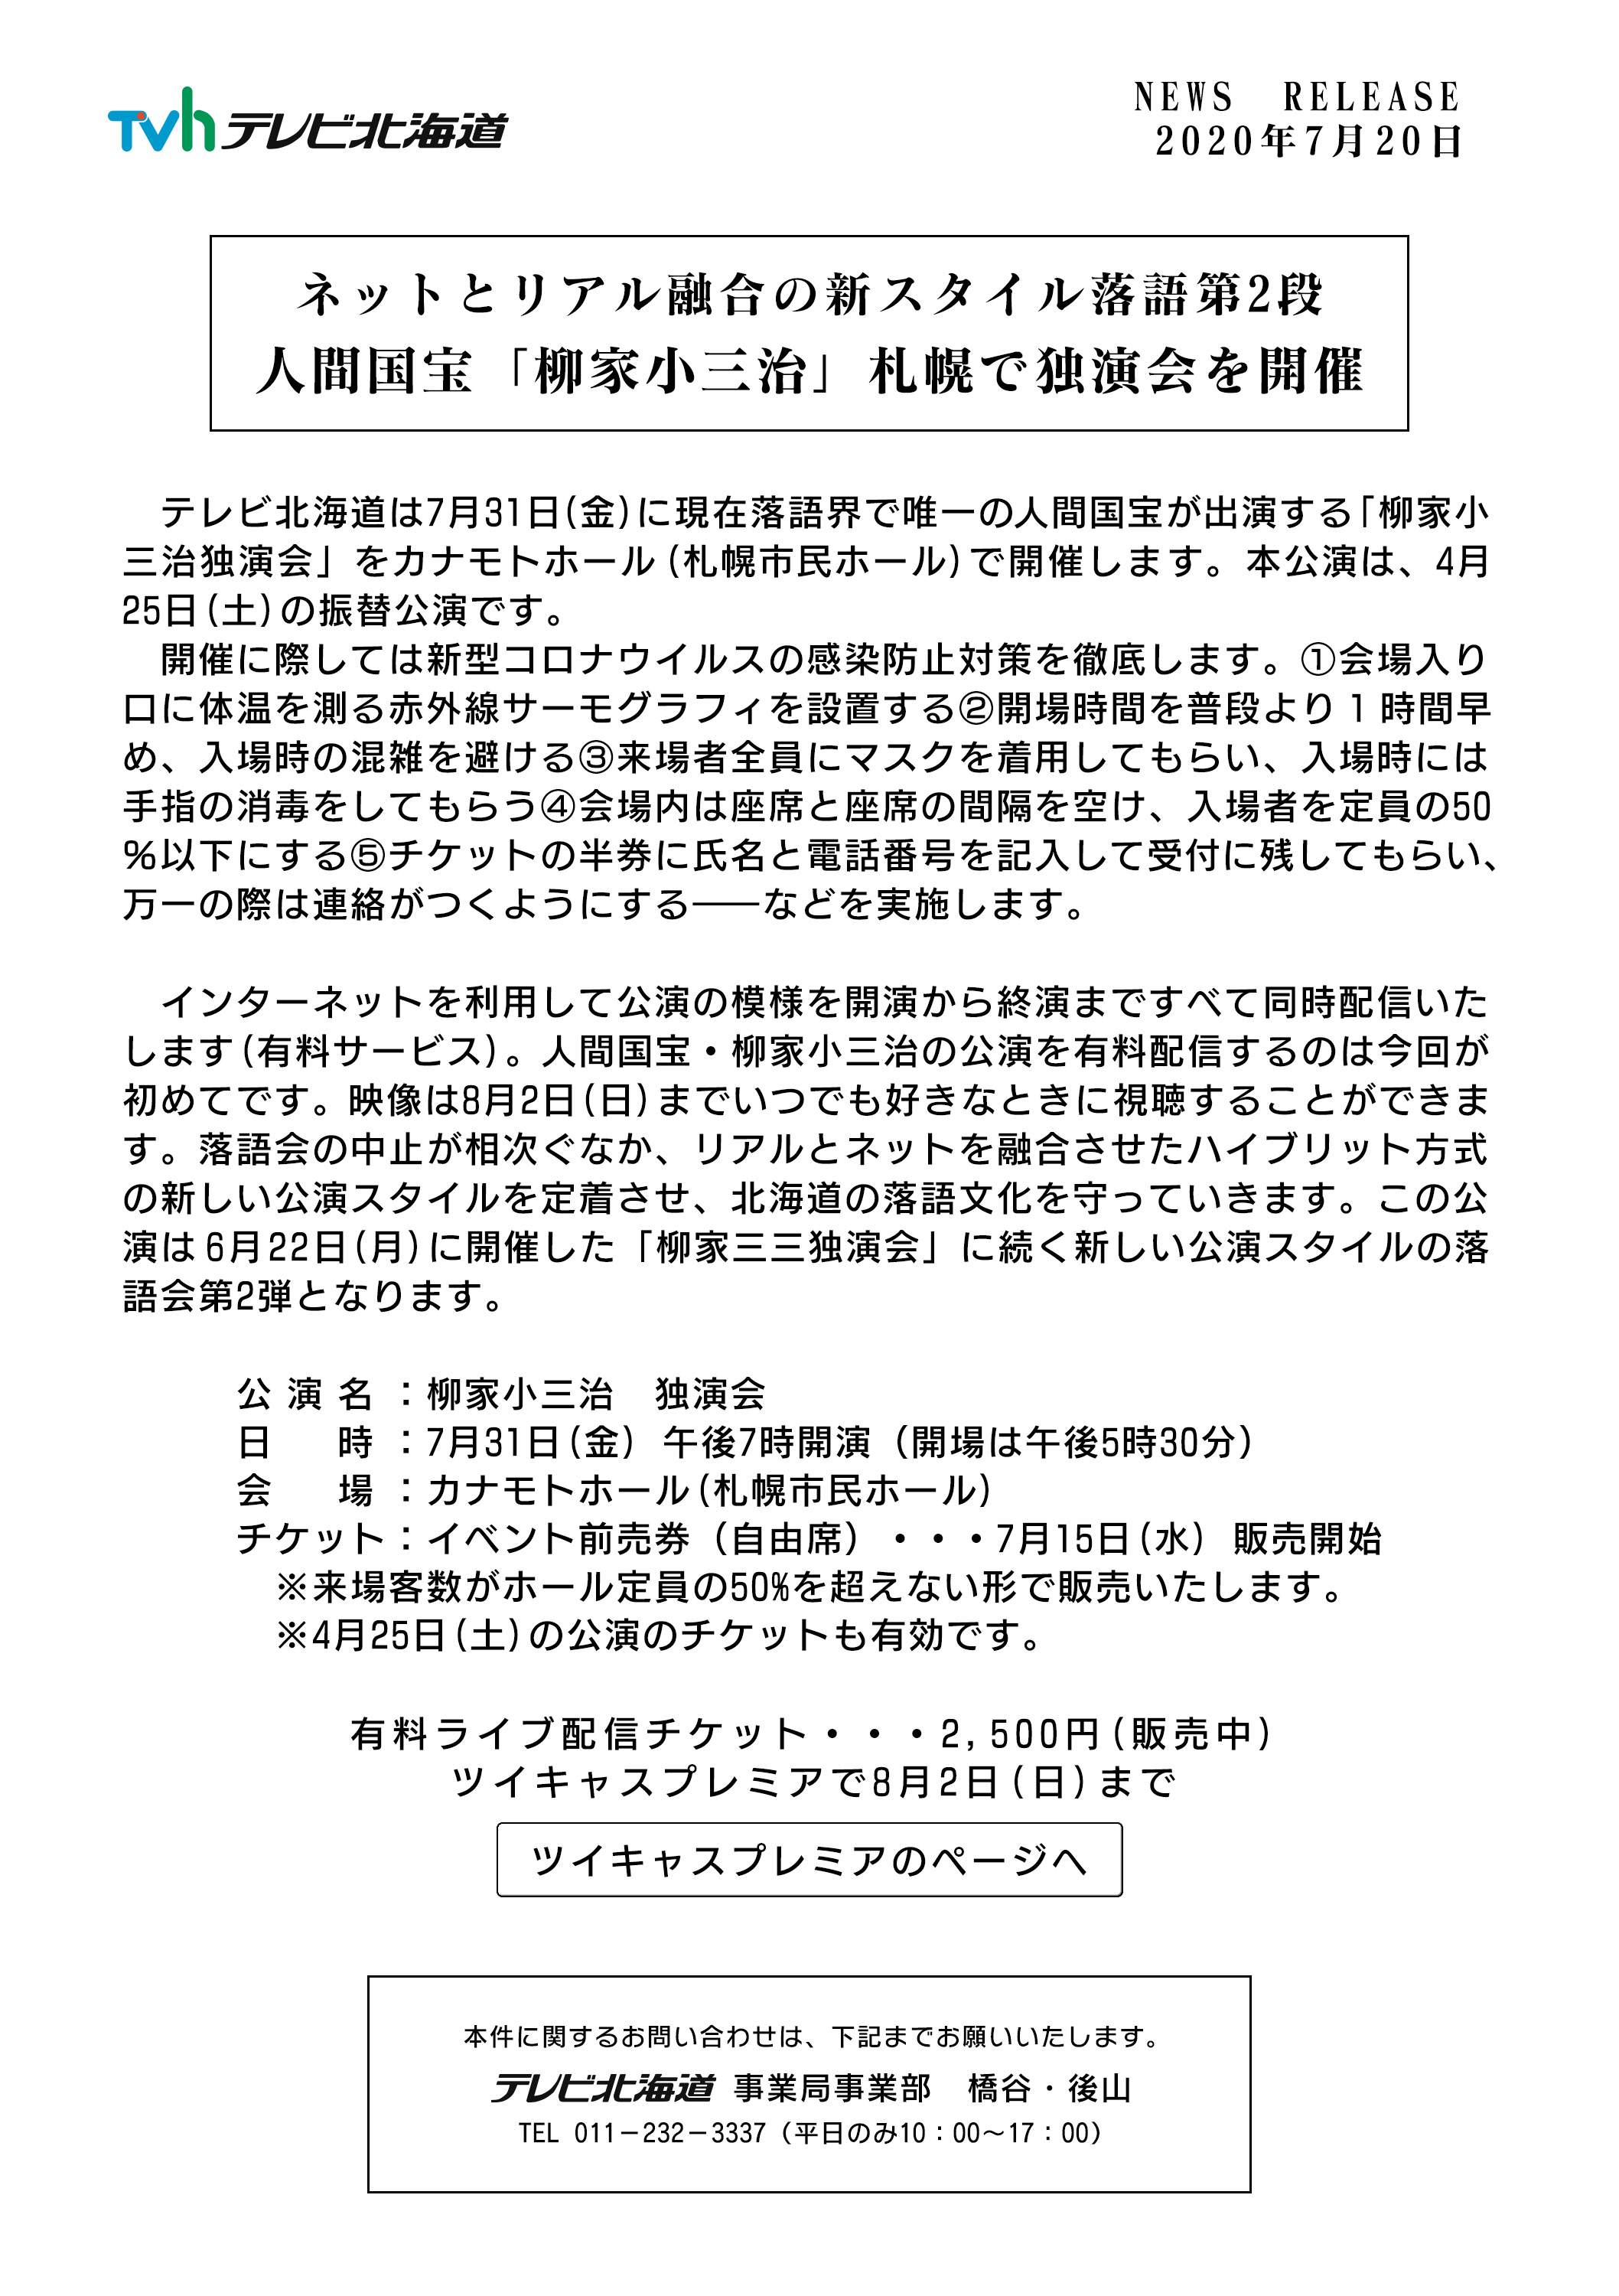 ネットとリアル融合の新スタイル落語第2弾 人間国宝「柳家小三治」札幌で独演会を開催